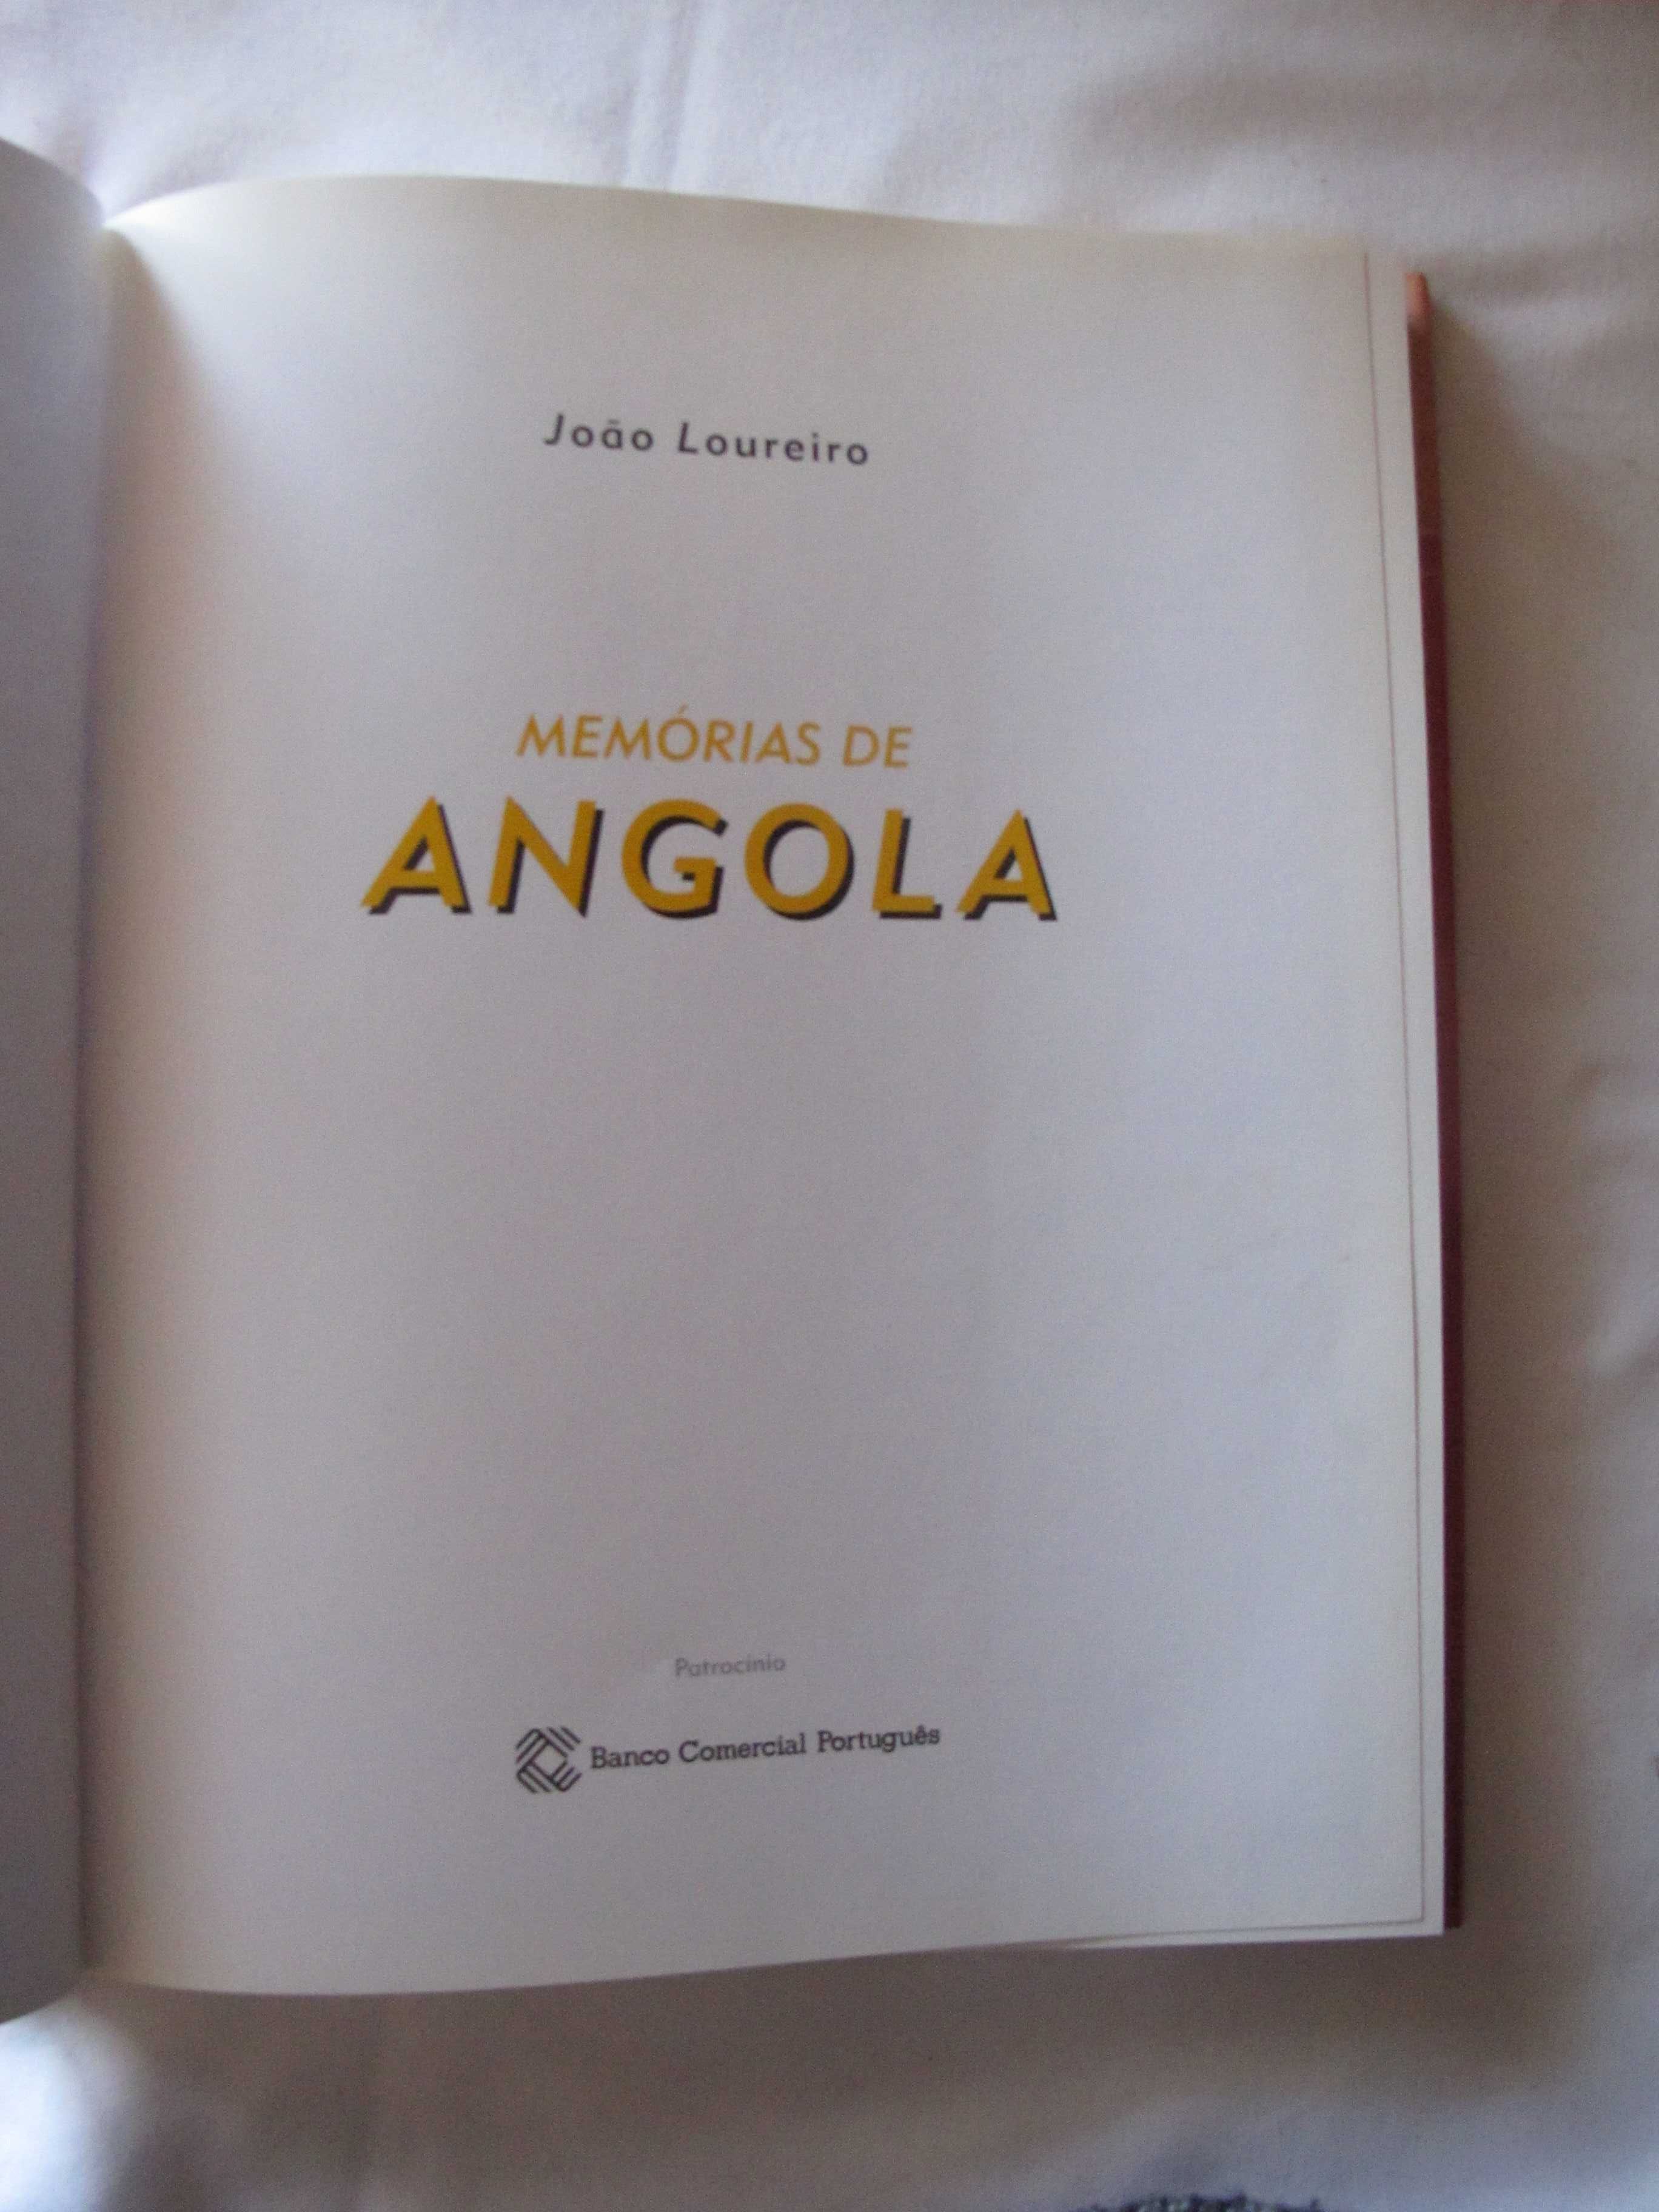 Livro “Memórias de Angola”